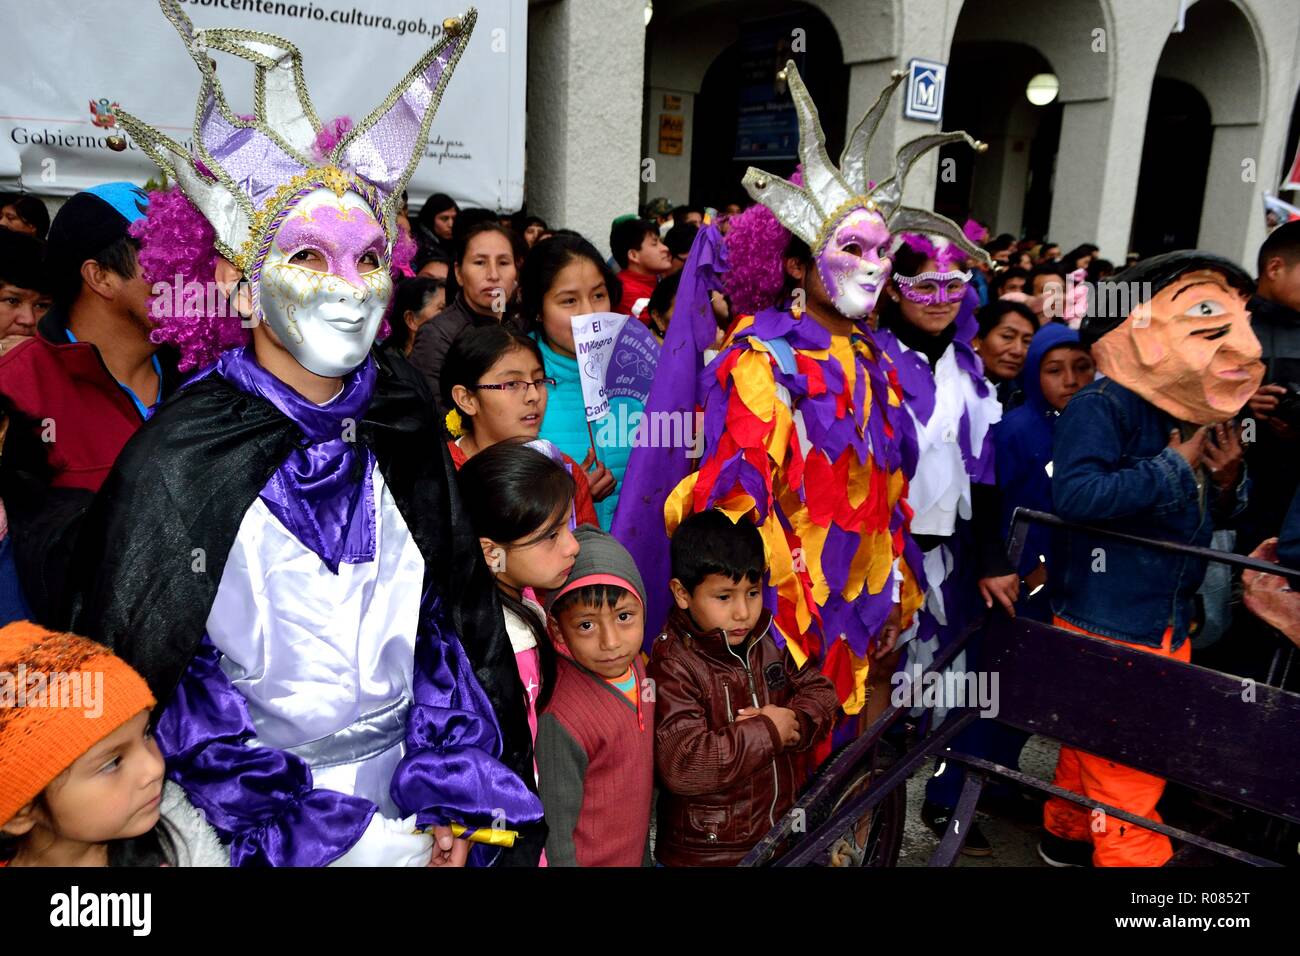 Fille unique dans le déguisement carnaval vénitien Photo Stock - Alamy